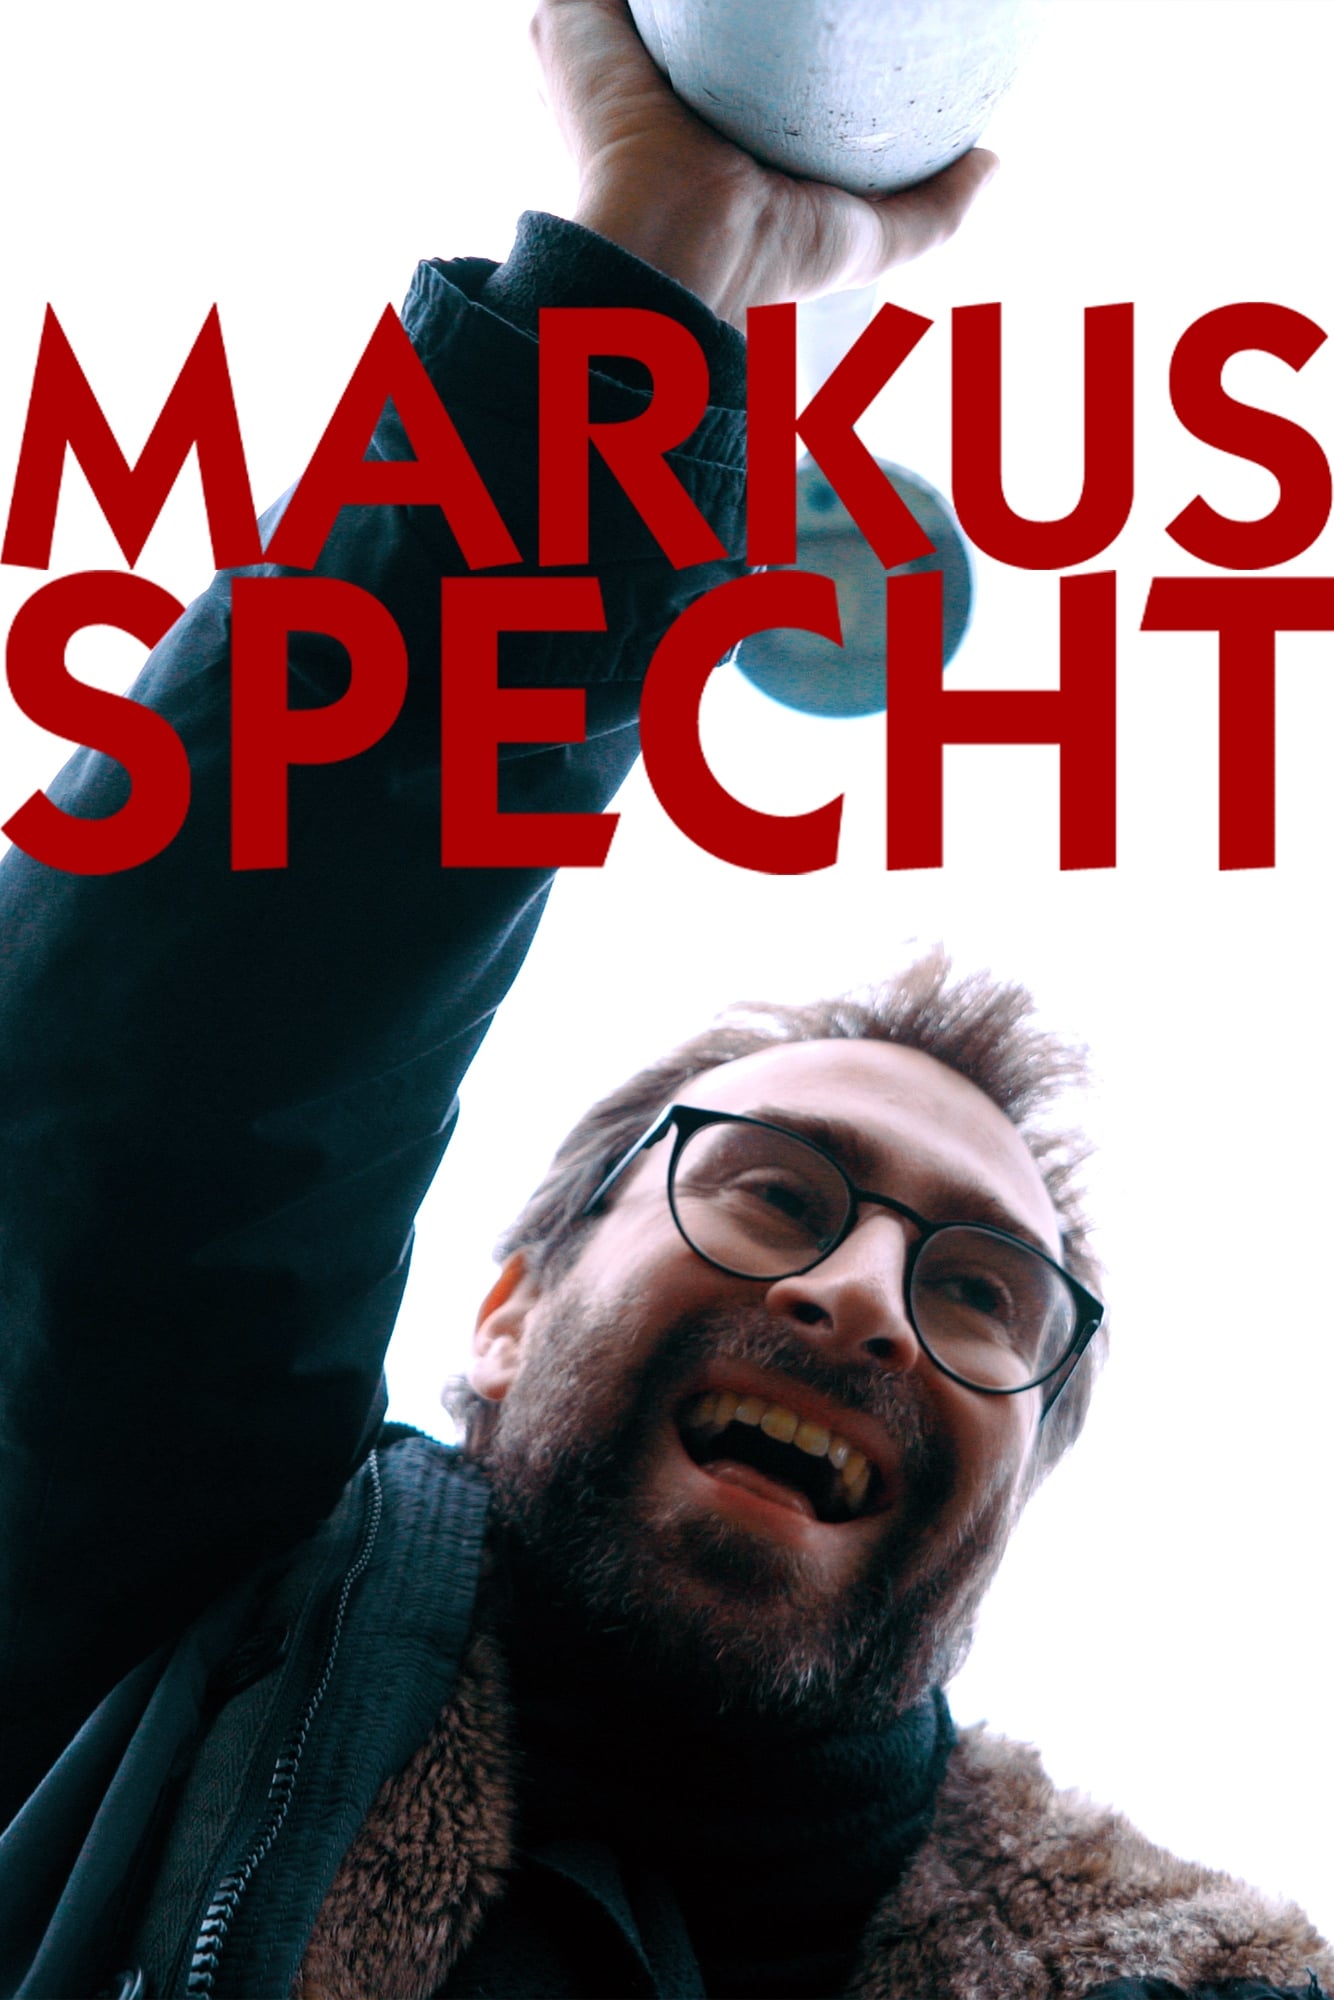 Markus Specht